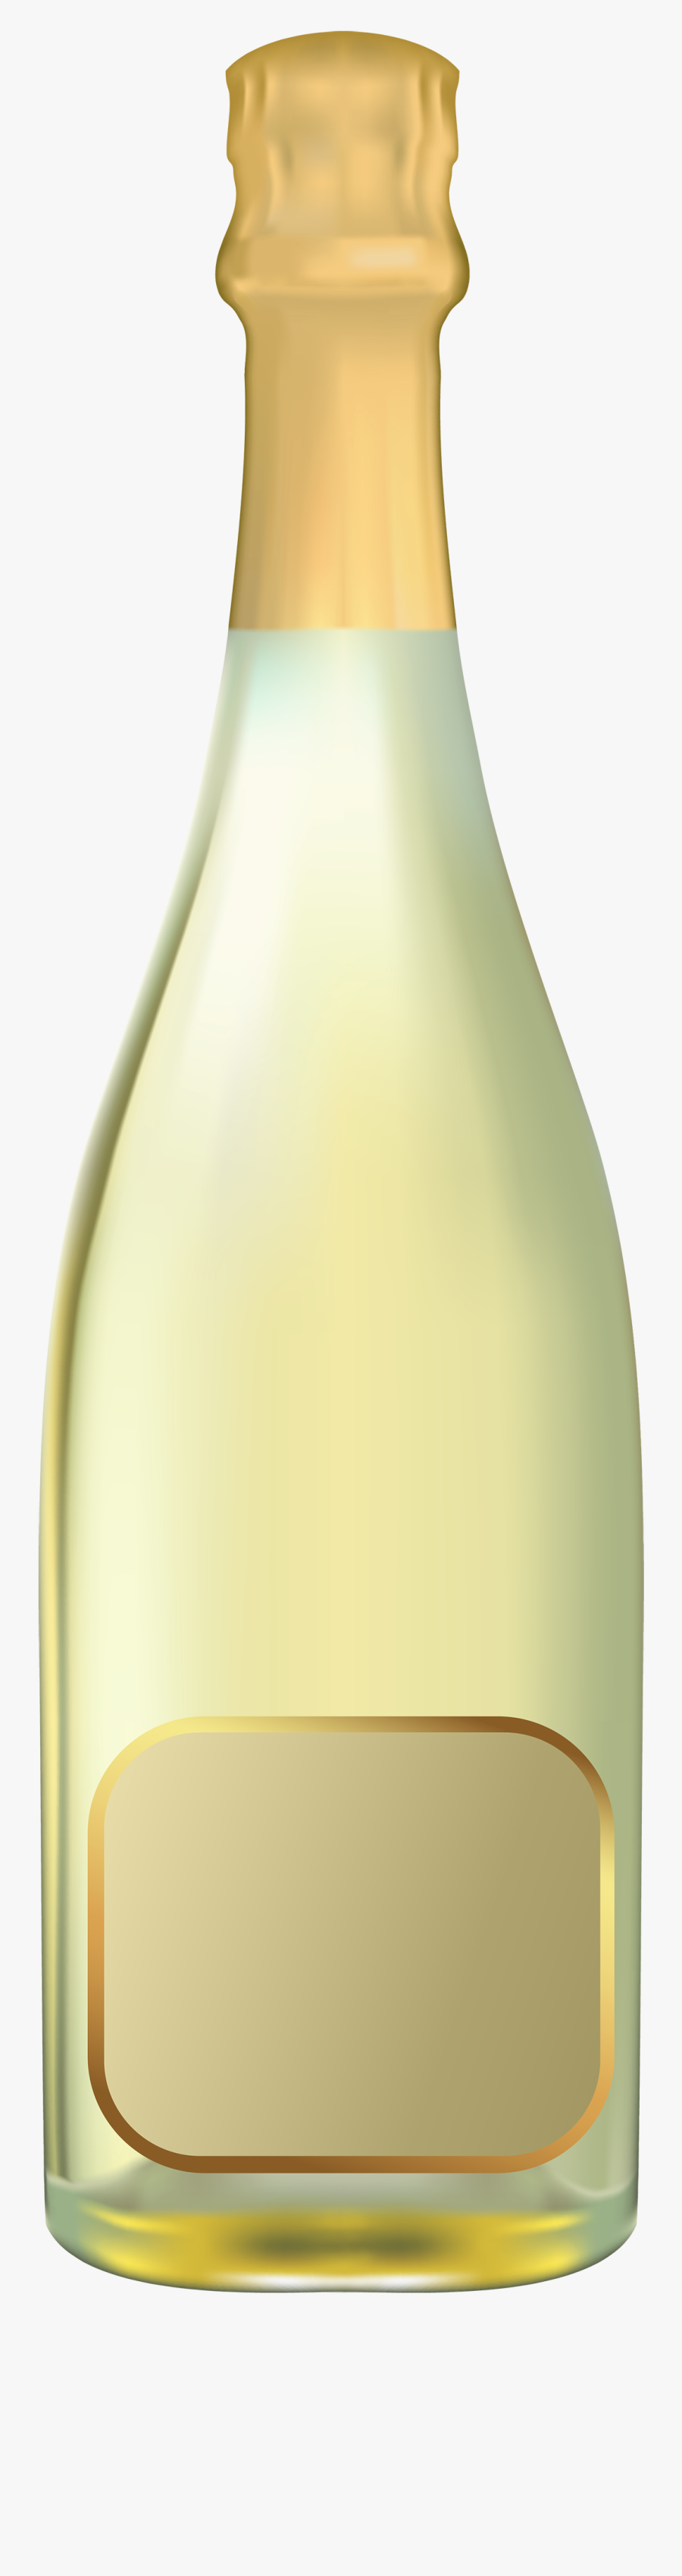 Champagne Bottle Png - Vase, Transparent Clipart